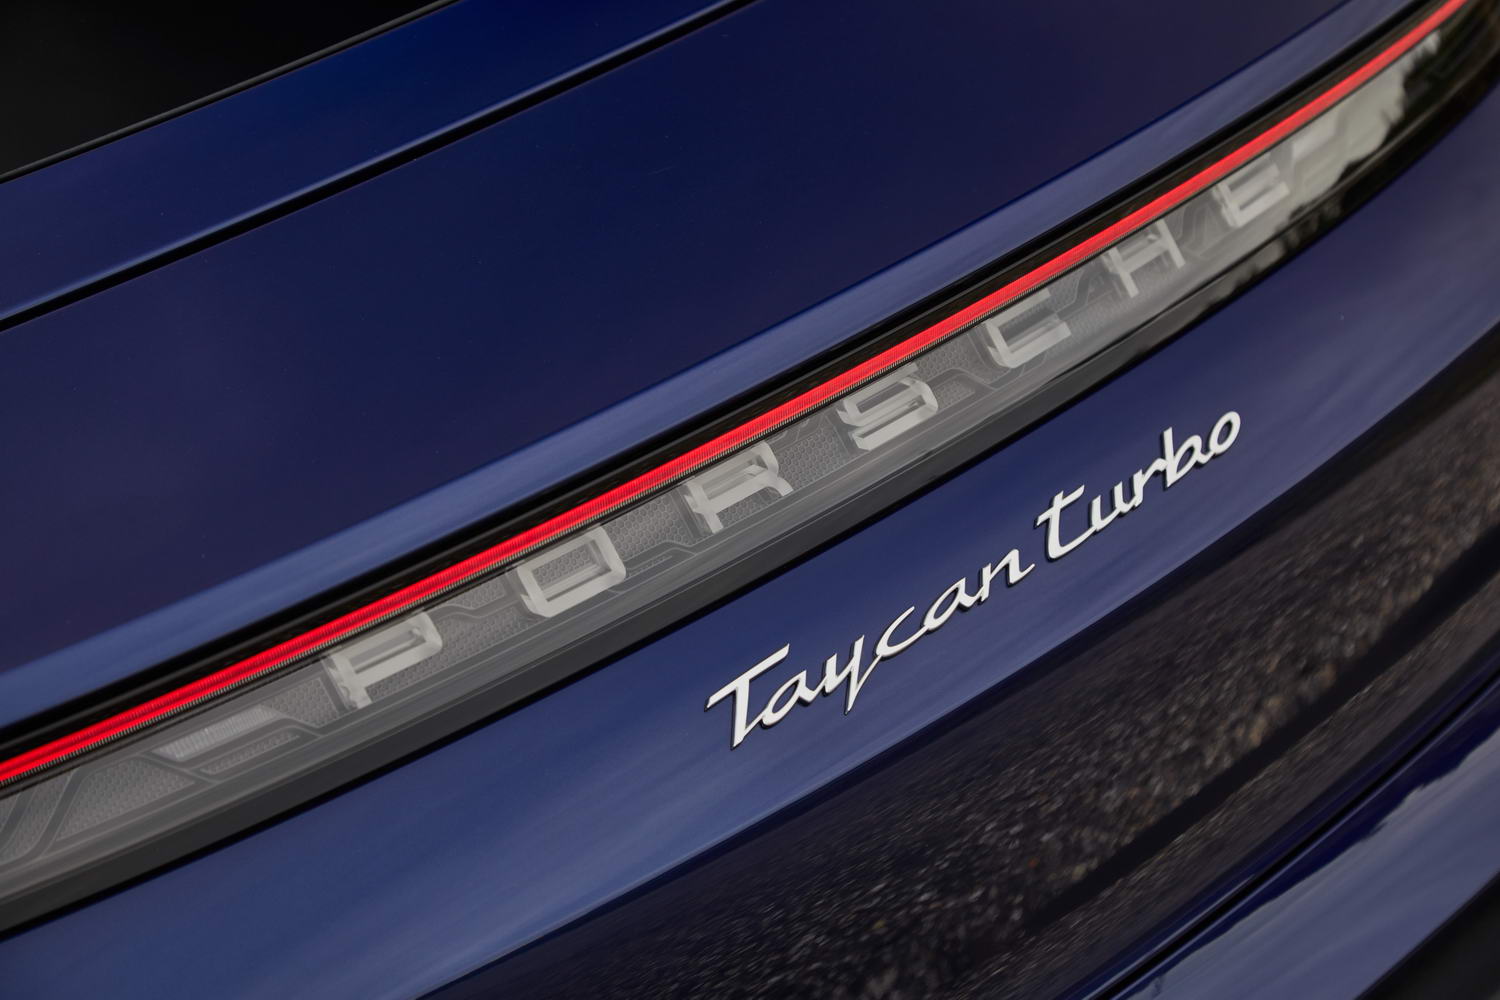 Porsche Taycan Turbo (2020)